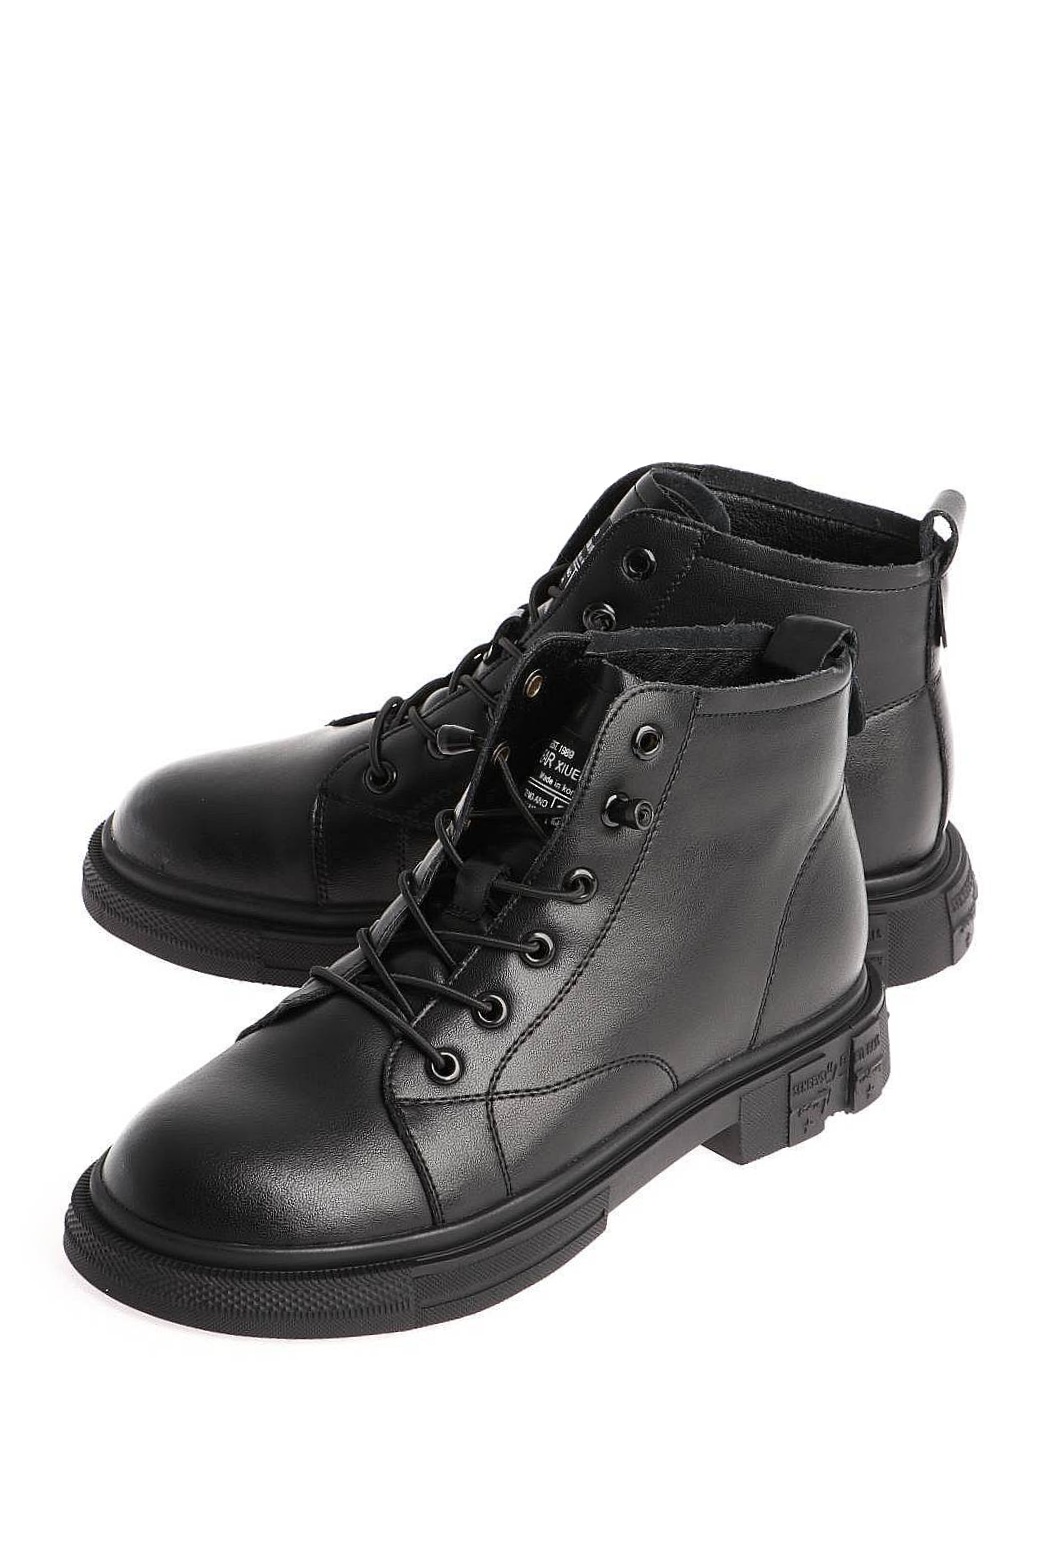 Ботинки женские Baden EH071-040 черные 40 RU